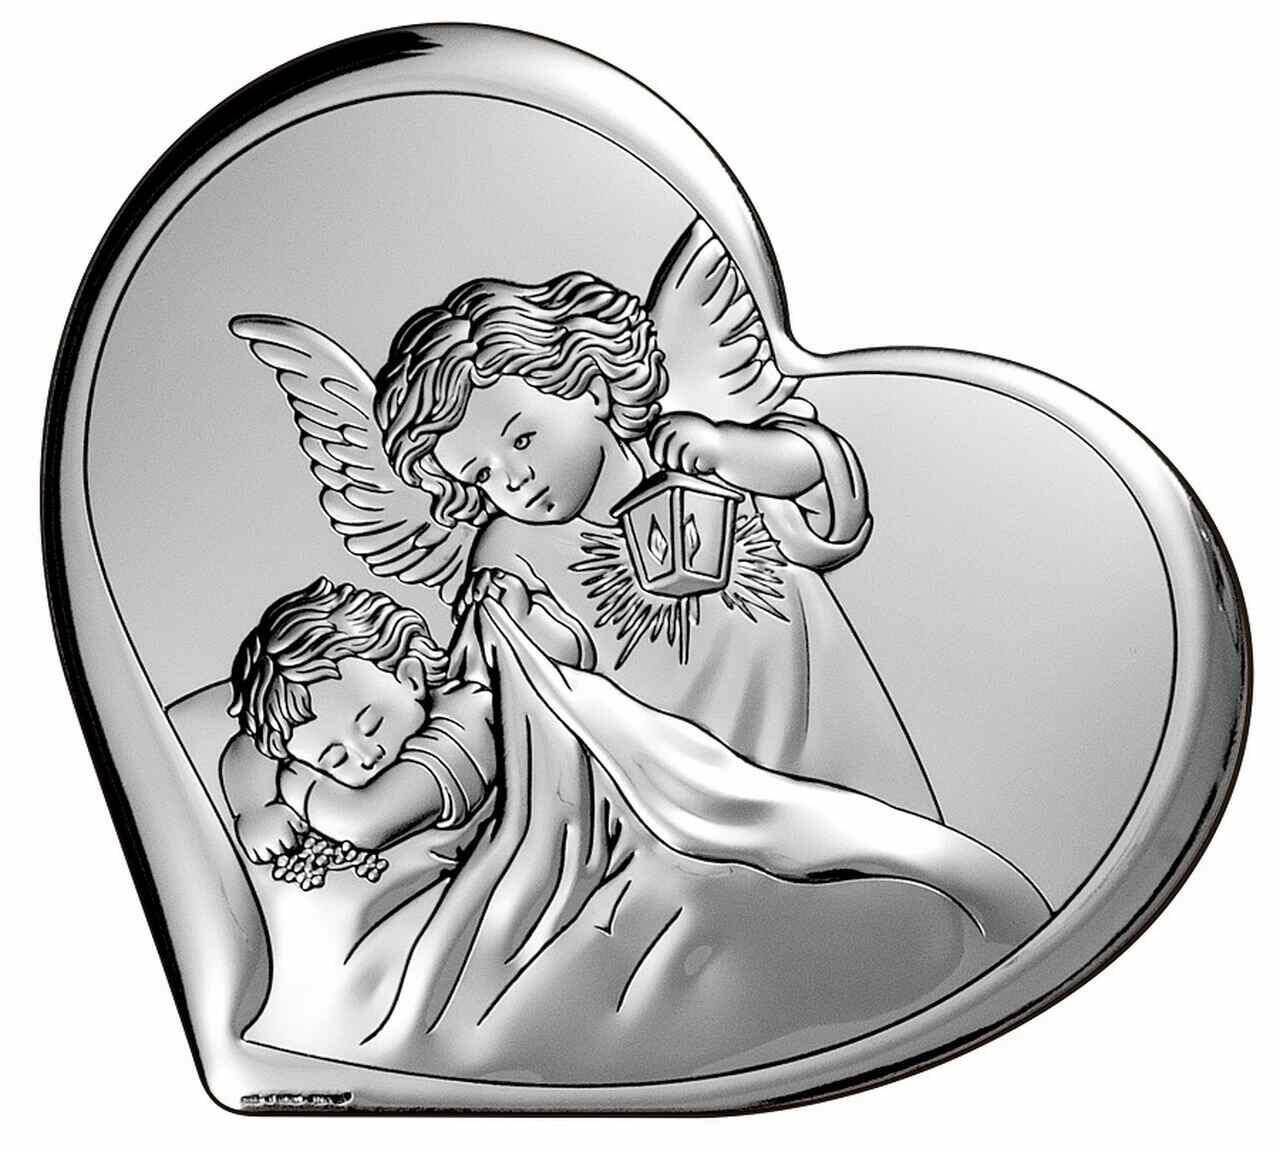 Ikona posrebrzana  Anioł z dzieckiem